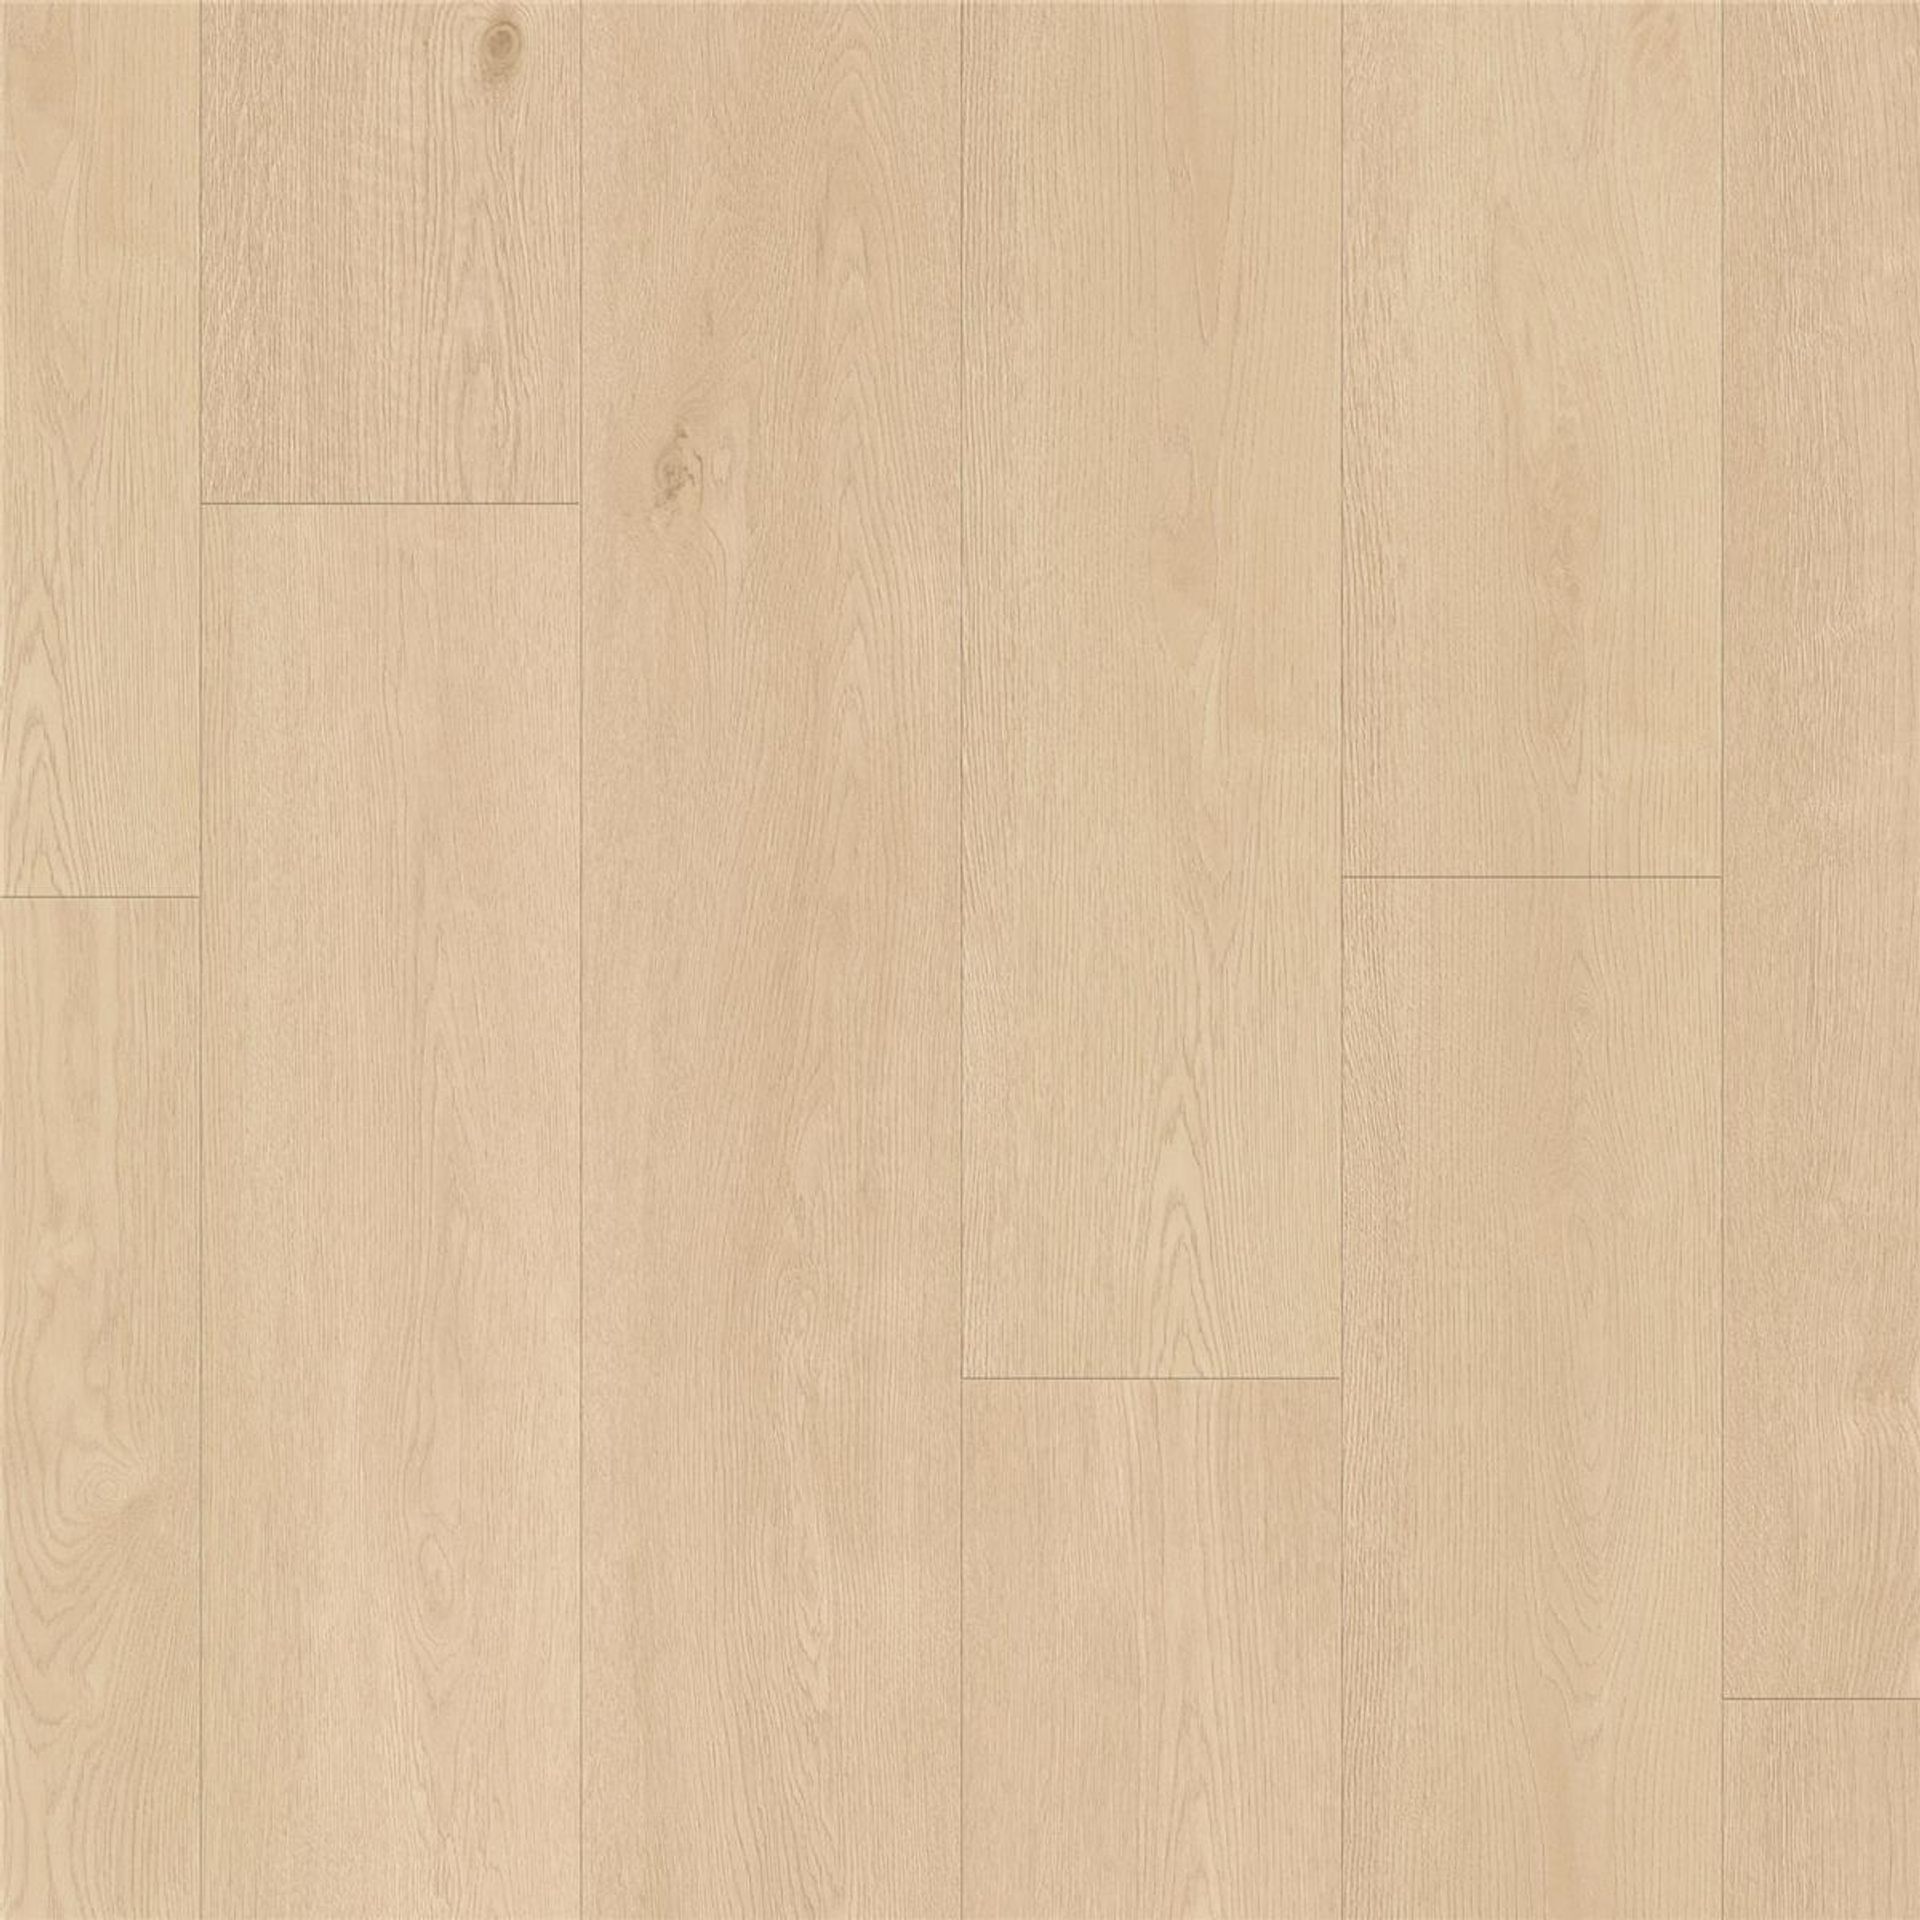 Designboden NATURALS-Chatillon Oak-Natural Planke 150 cm x 25 cm - Nutzschichtdicke 0,70 mm